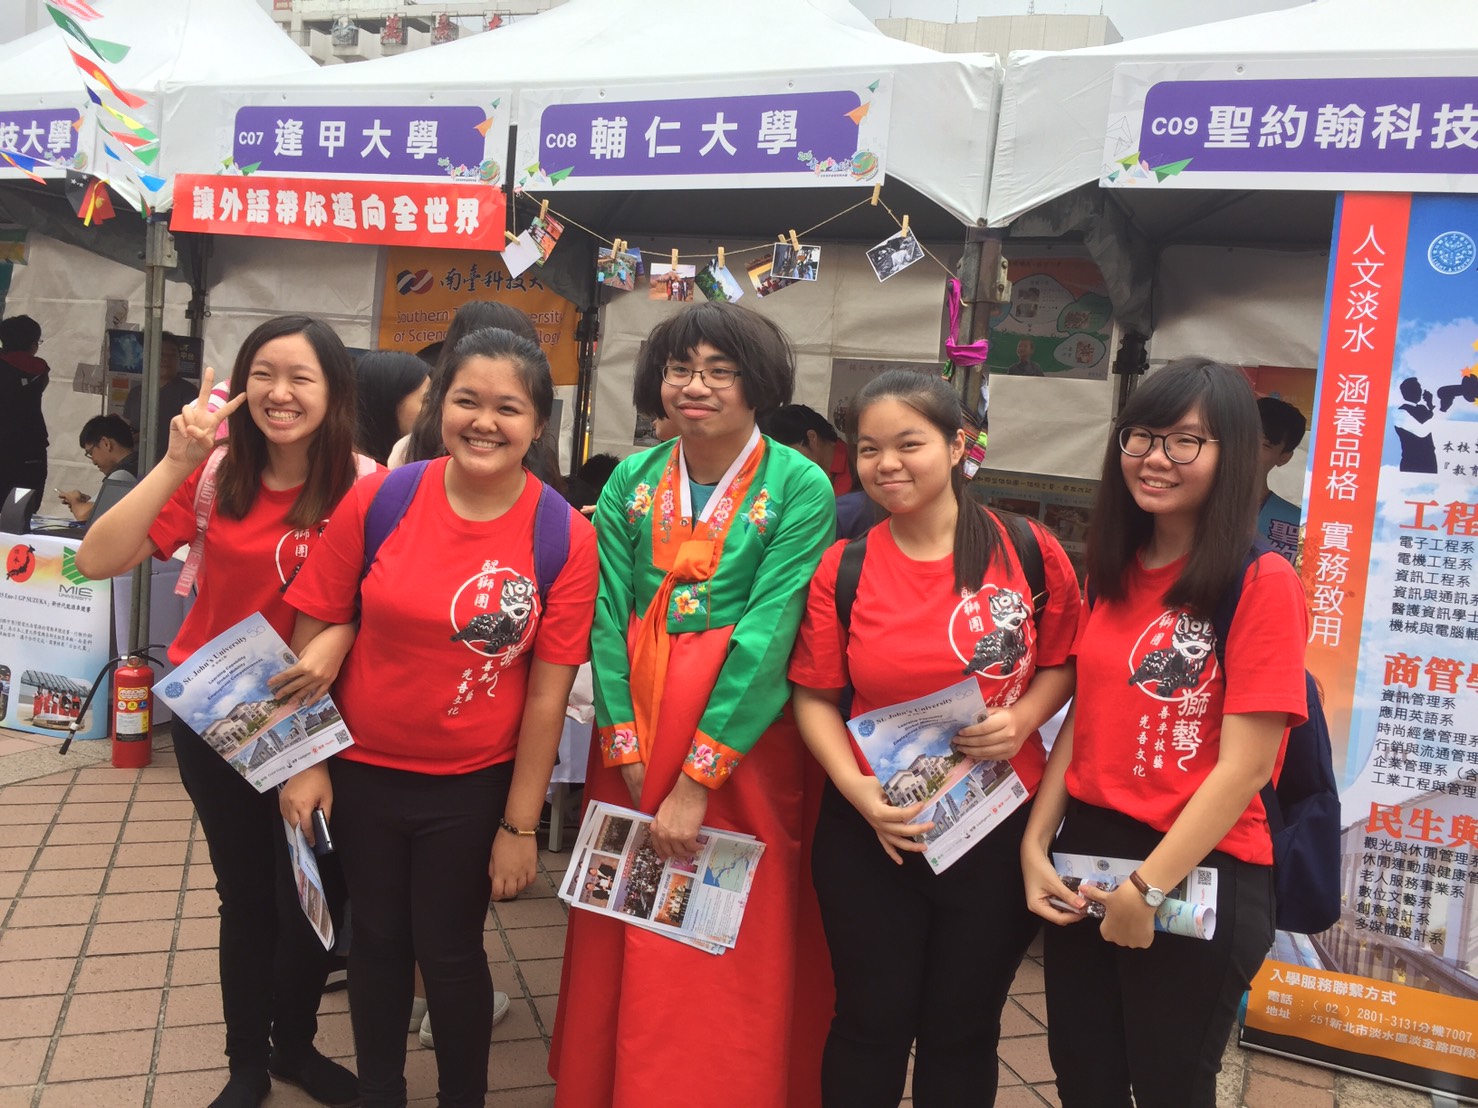 聖約大同學身著韓國傳統服飾展現多元文化，吸引許多遊客前來合照並詢問學校特色

